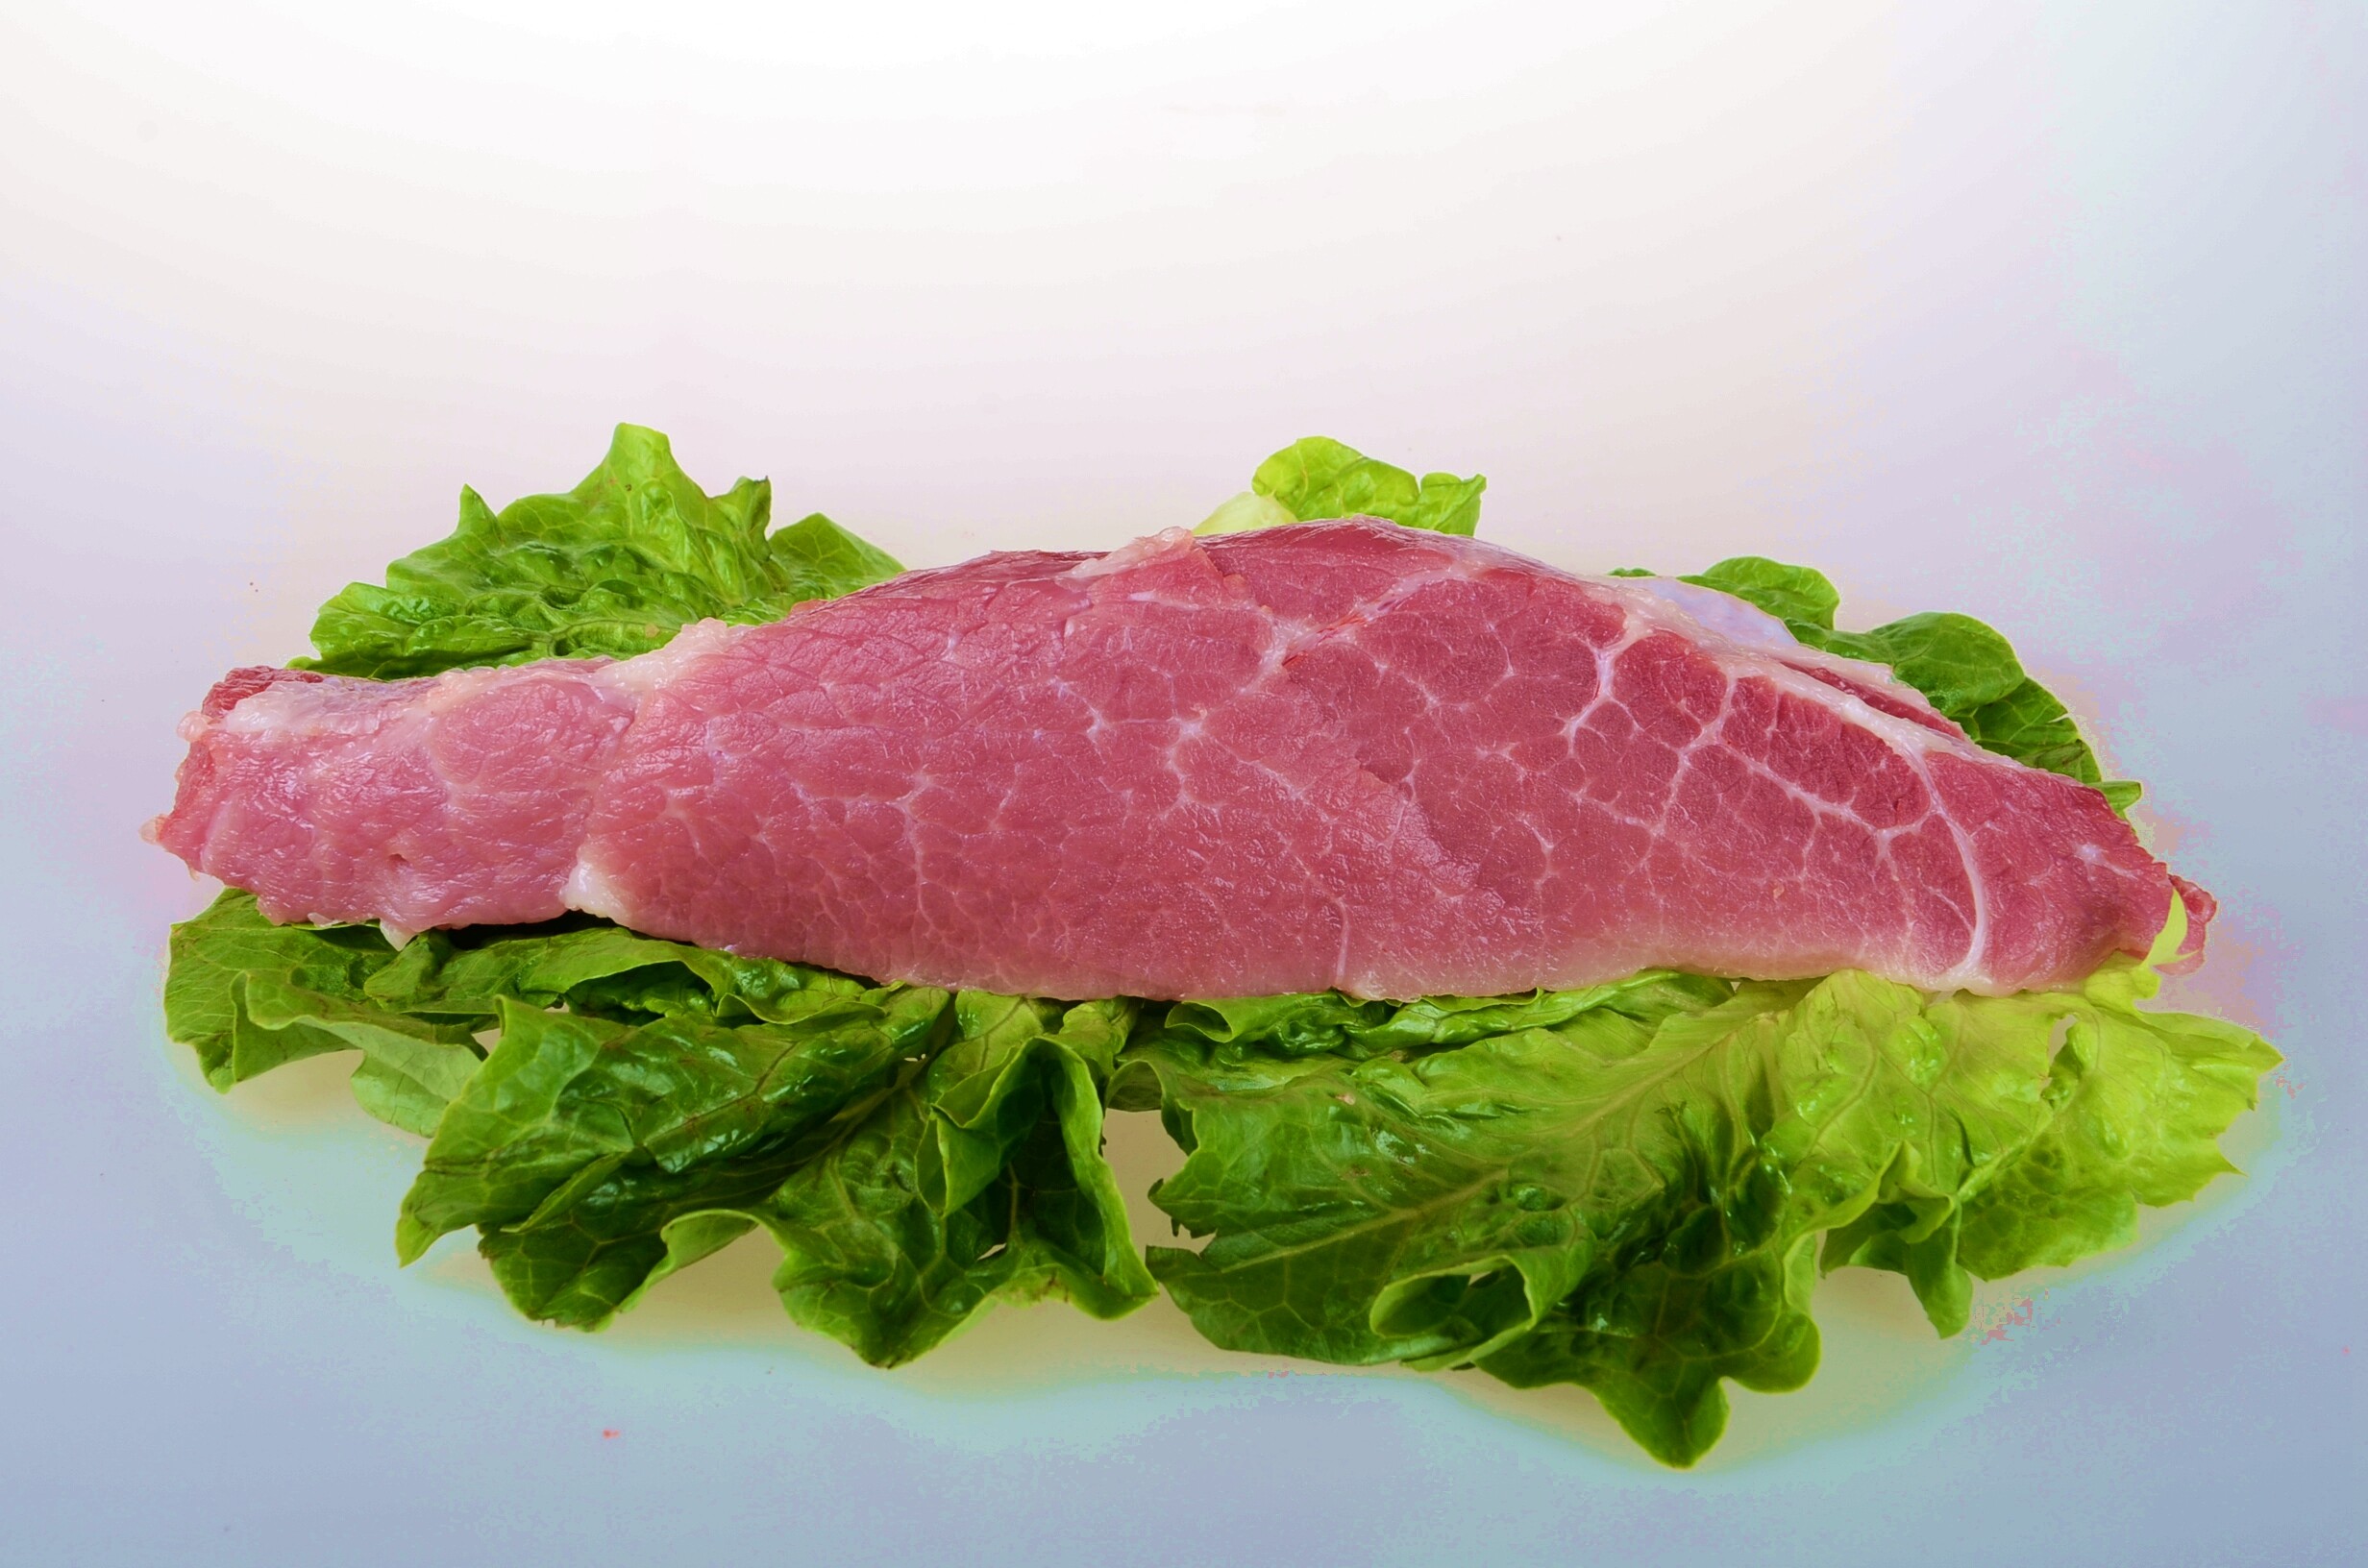 鲜猪肉|都江堰市堰岩老腊肉厂